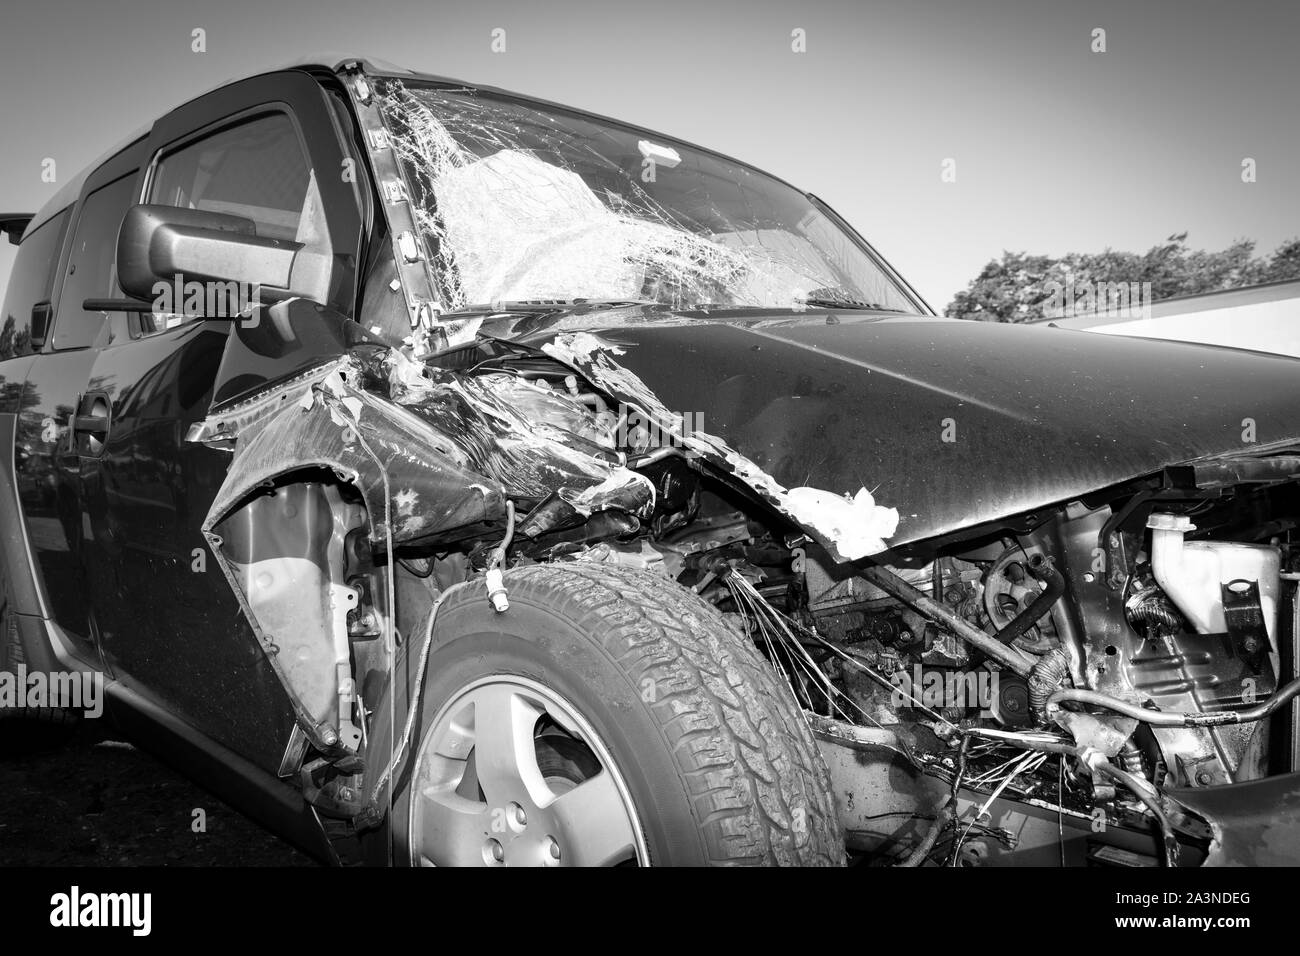 Perte totale de la voiture après un accident; dommages importants et déploiement des sacs gonflables. Banque D'Images